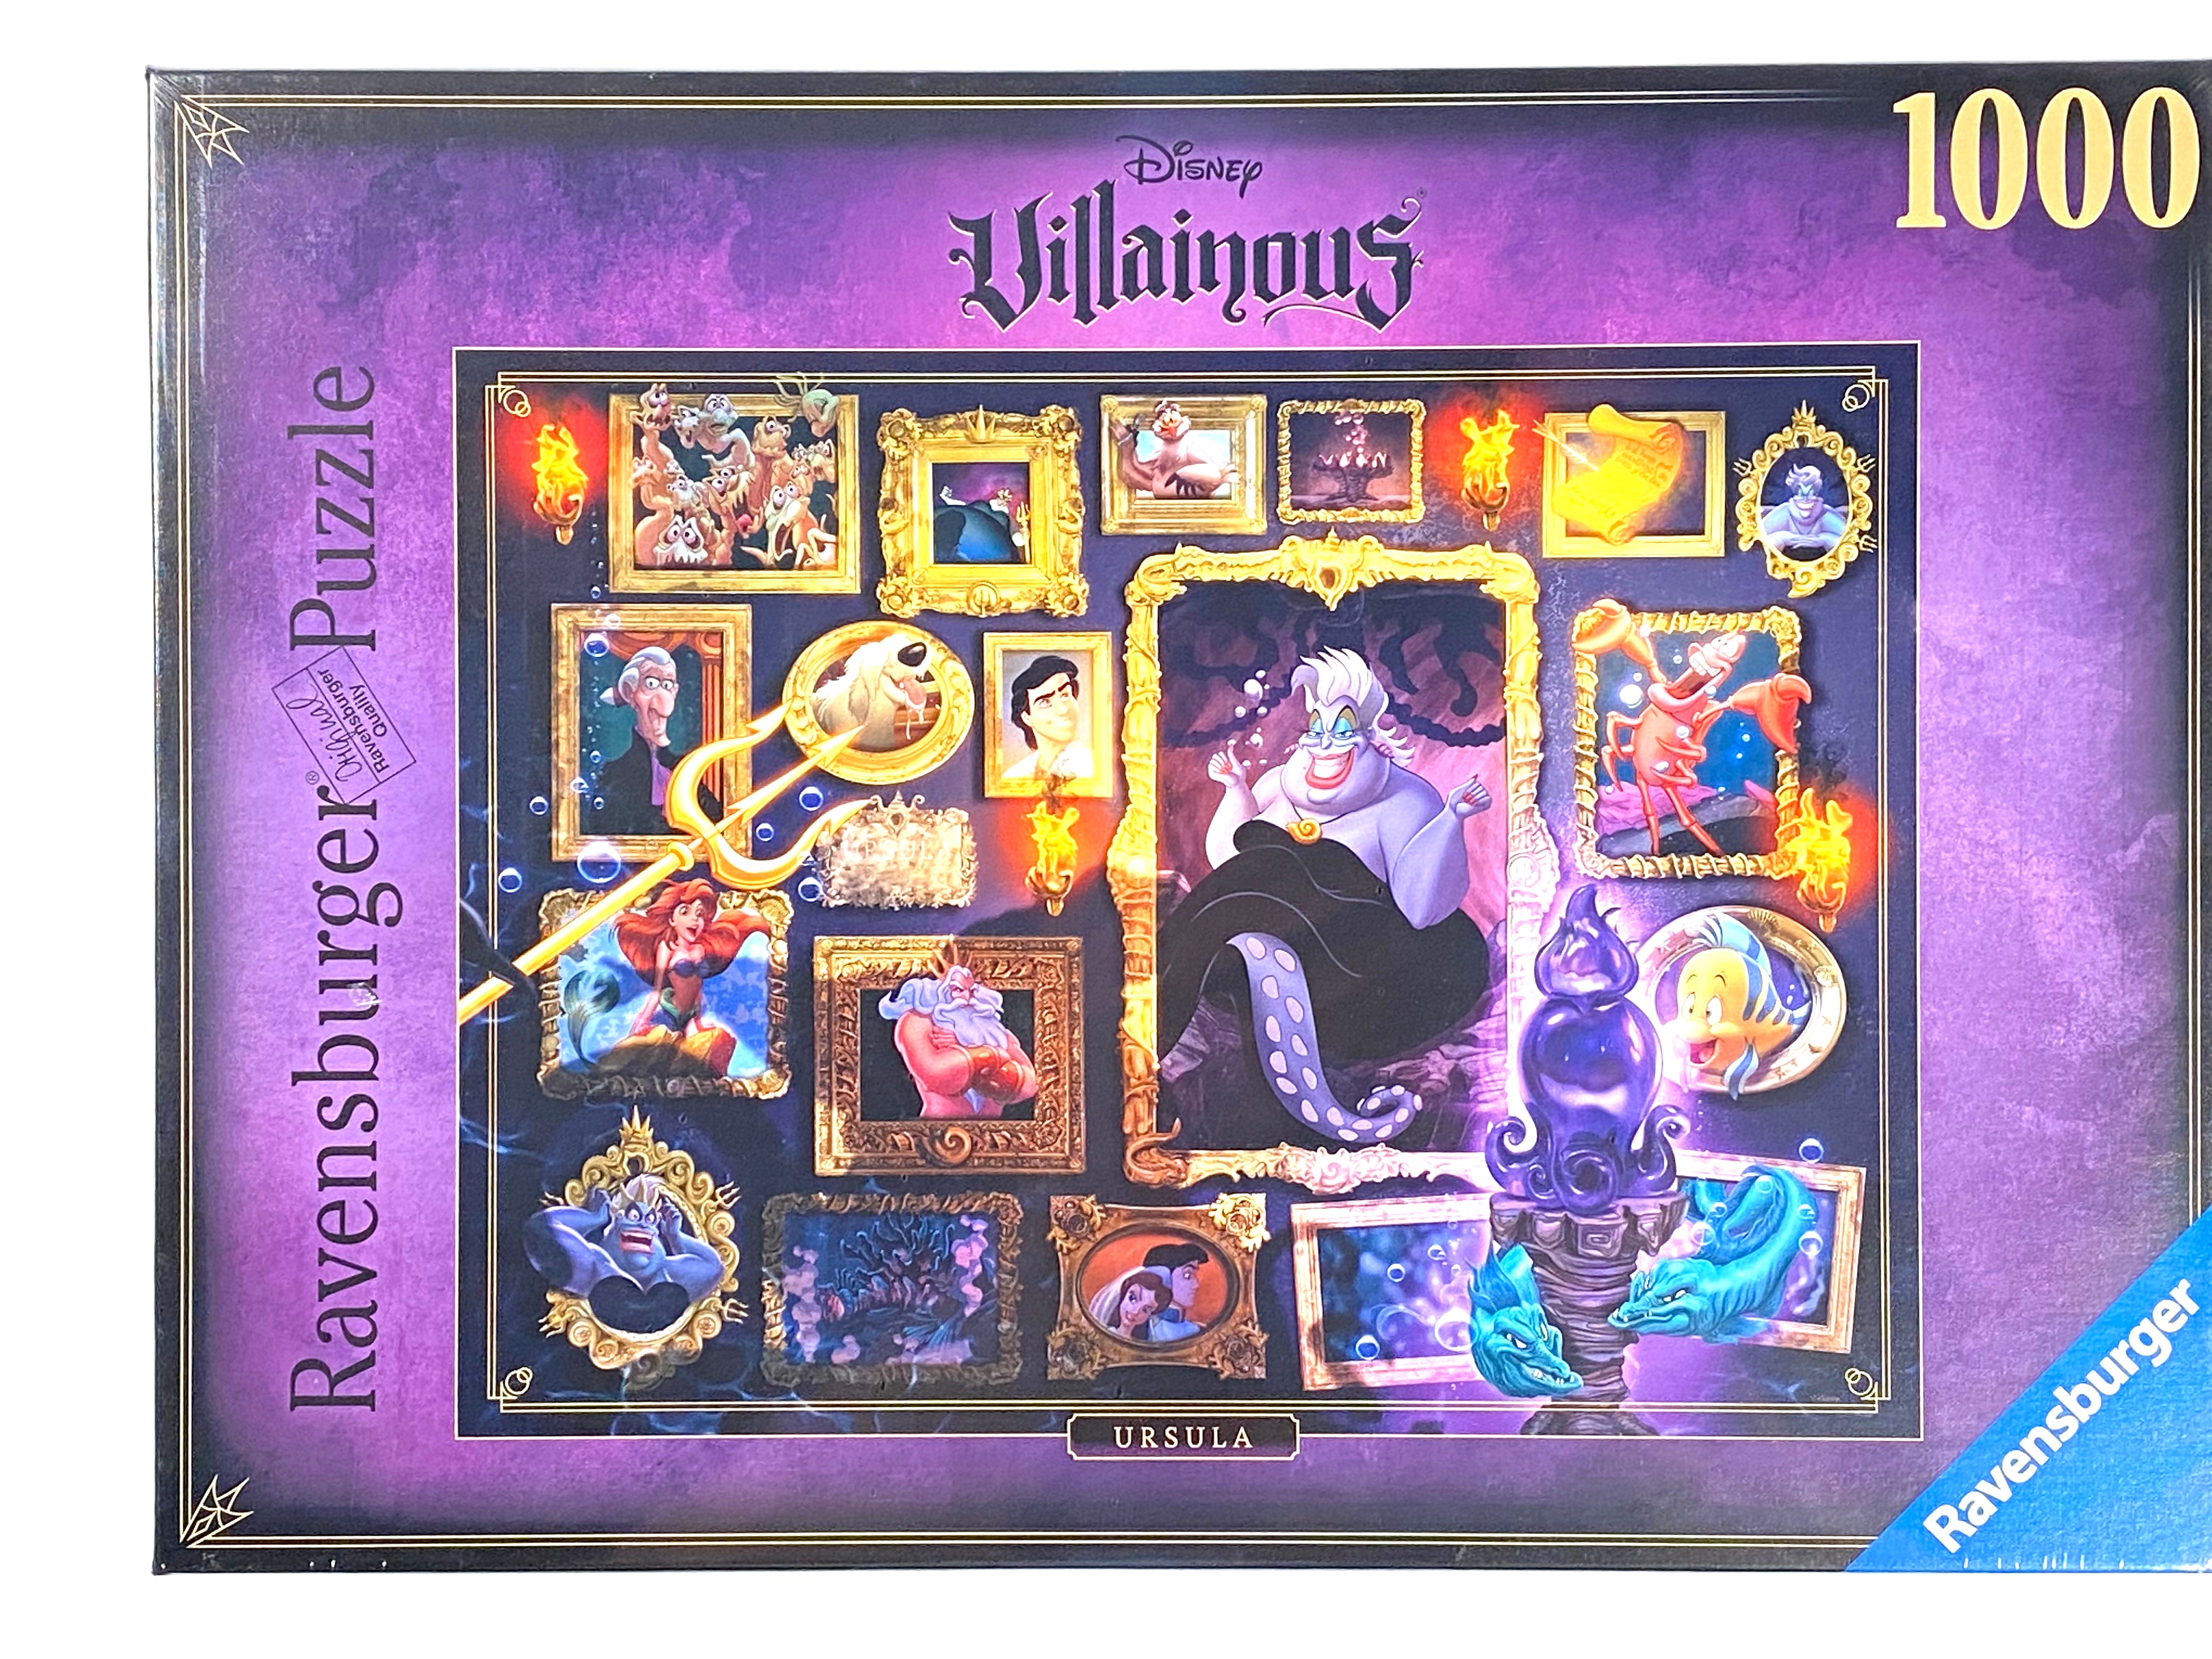 Disney Villainous: Ursula 1000pc Puzzle – The Pink a la Mode